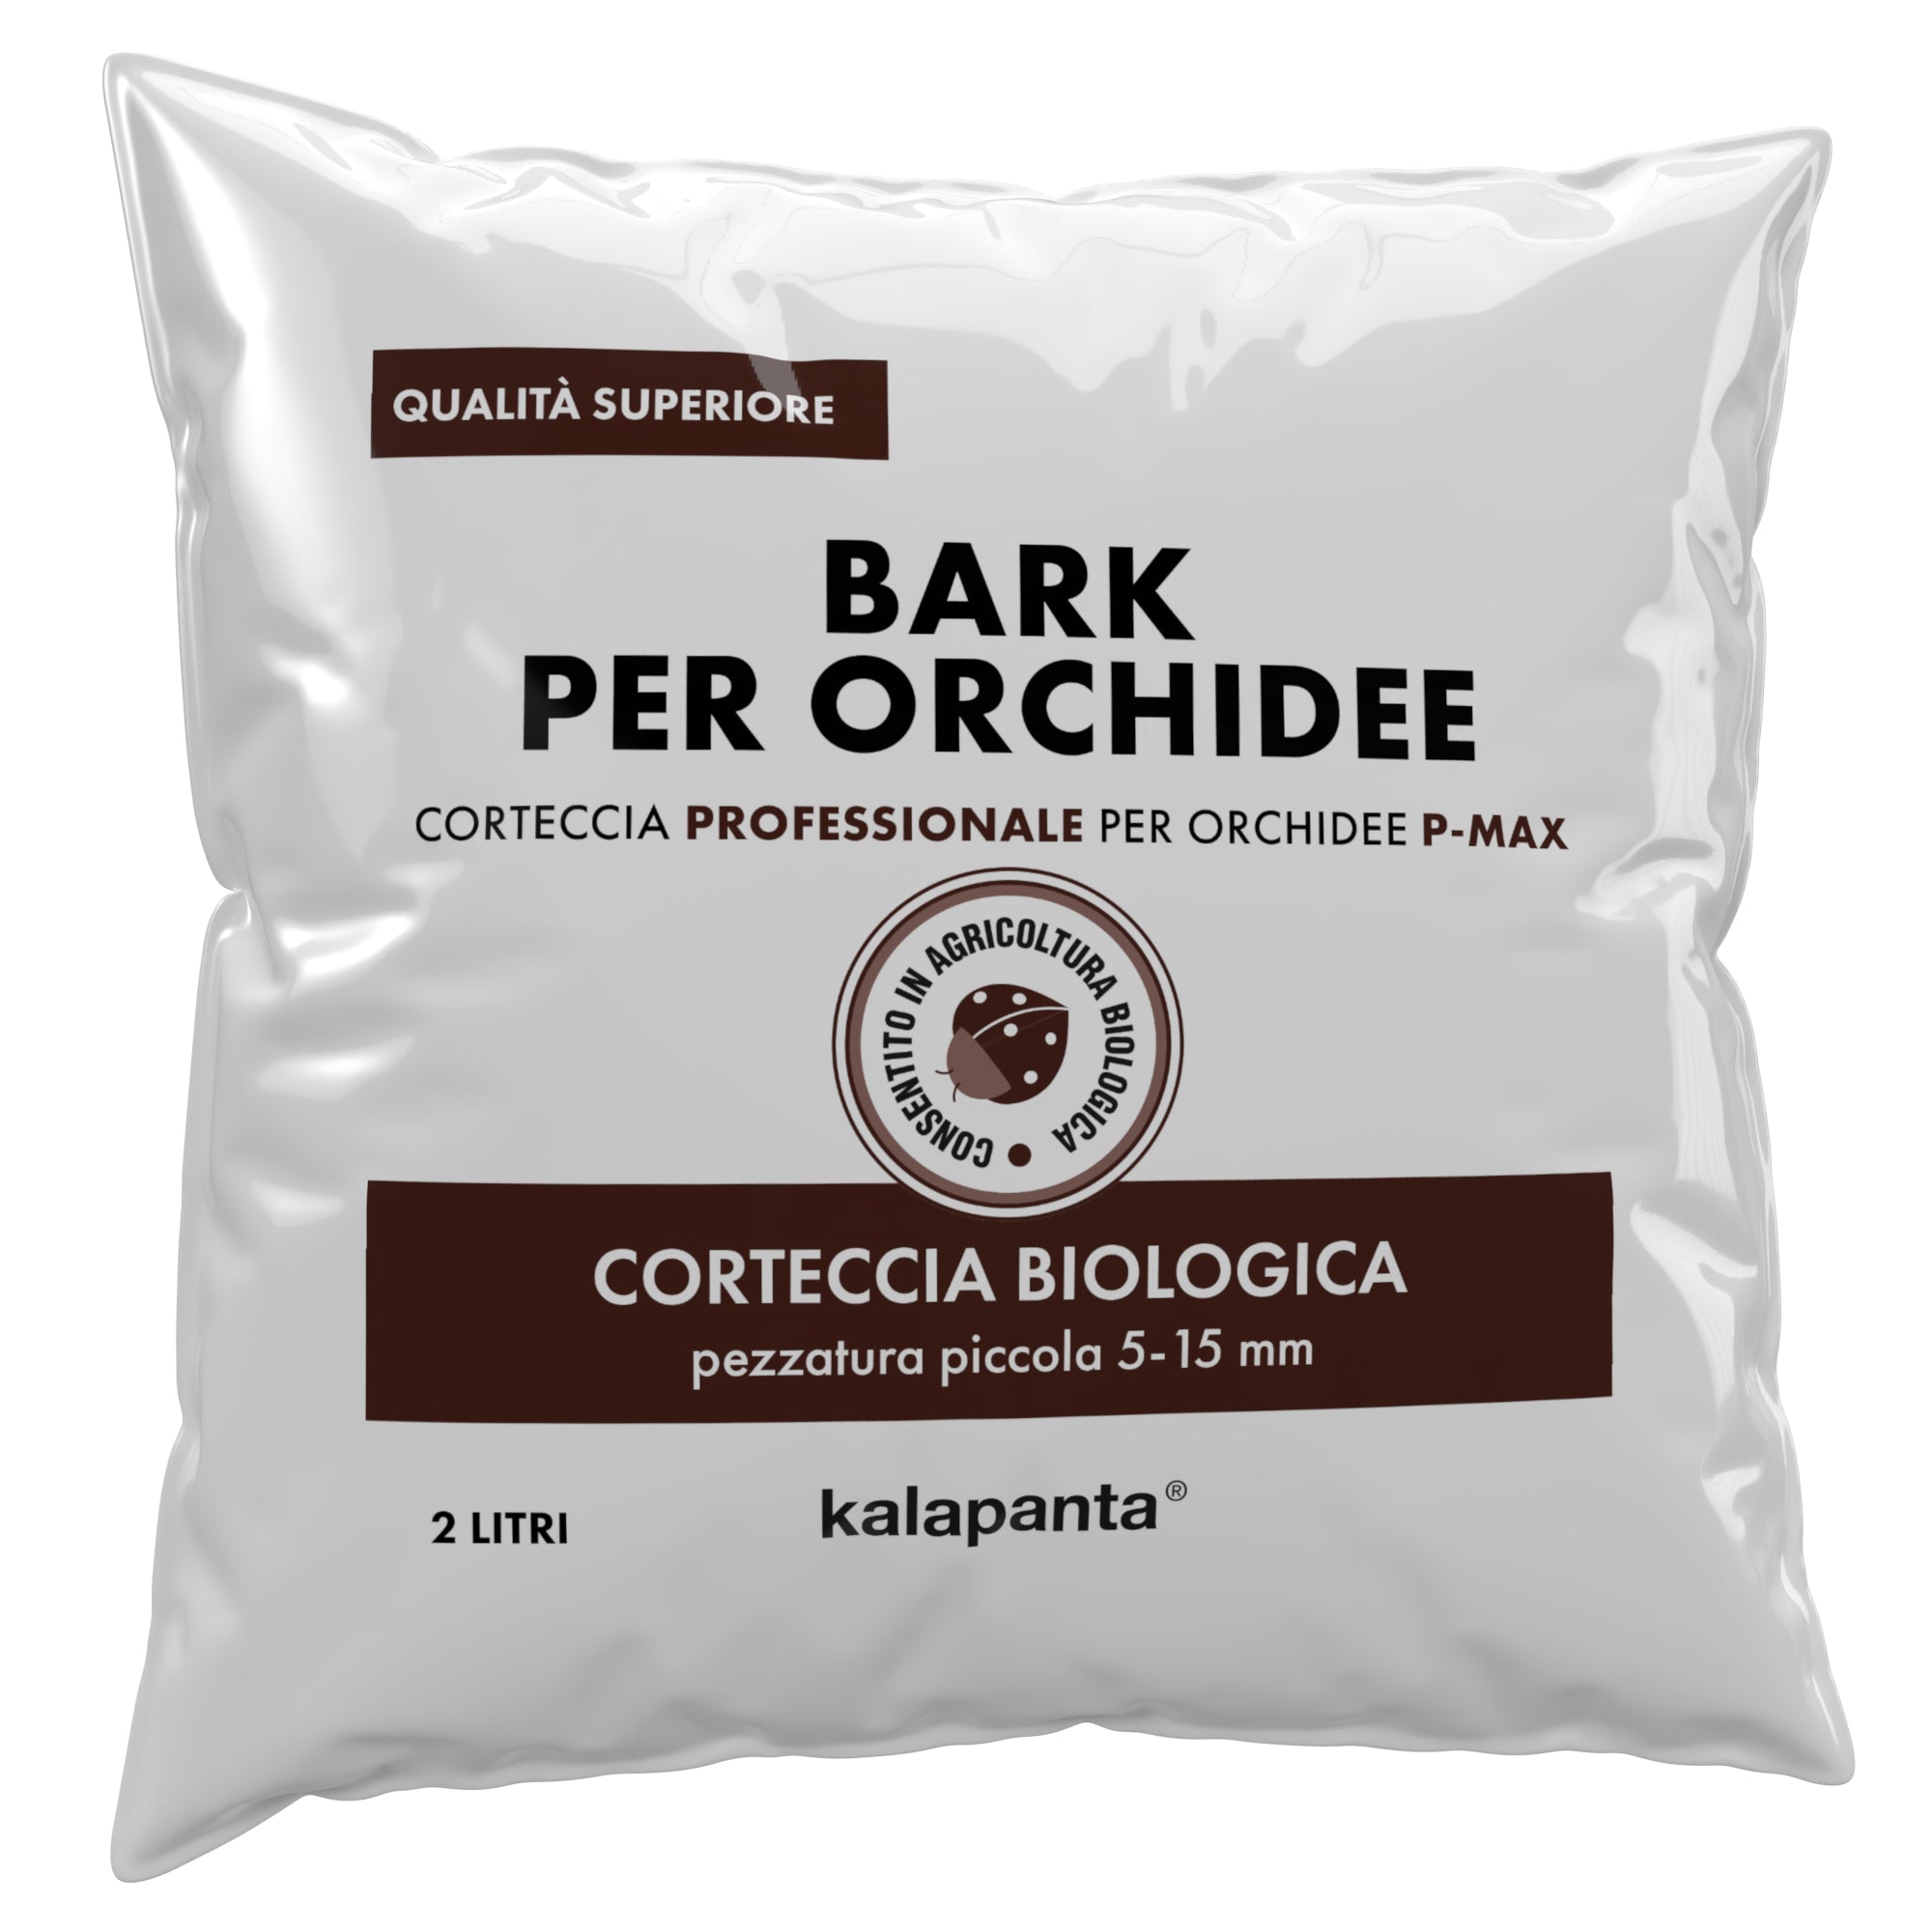 Corteccia (Bark) per orchidee 5-15 mm. preidratata 4 litri 1,5 chili circa